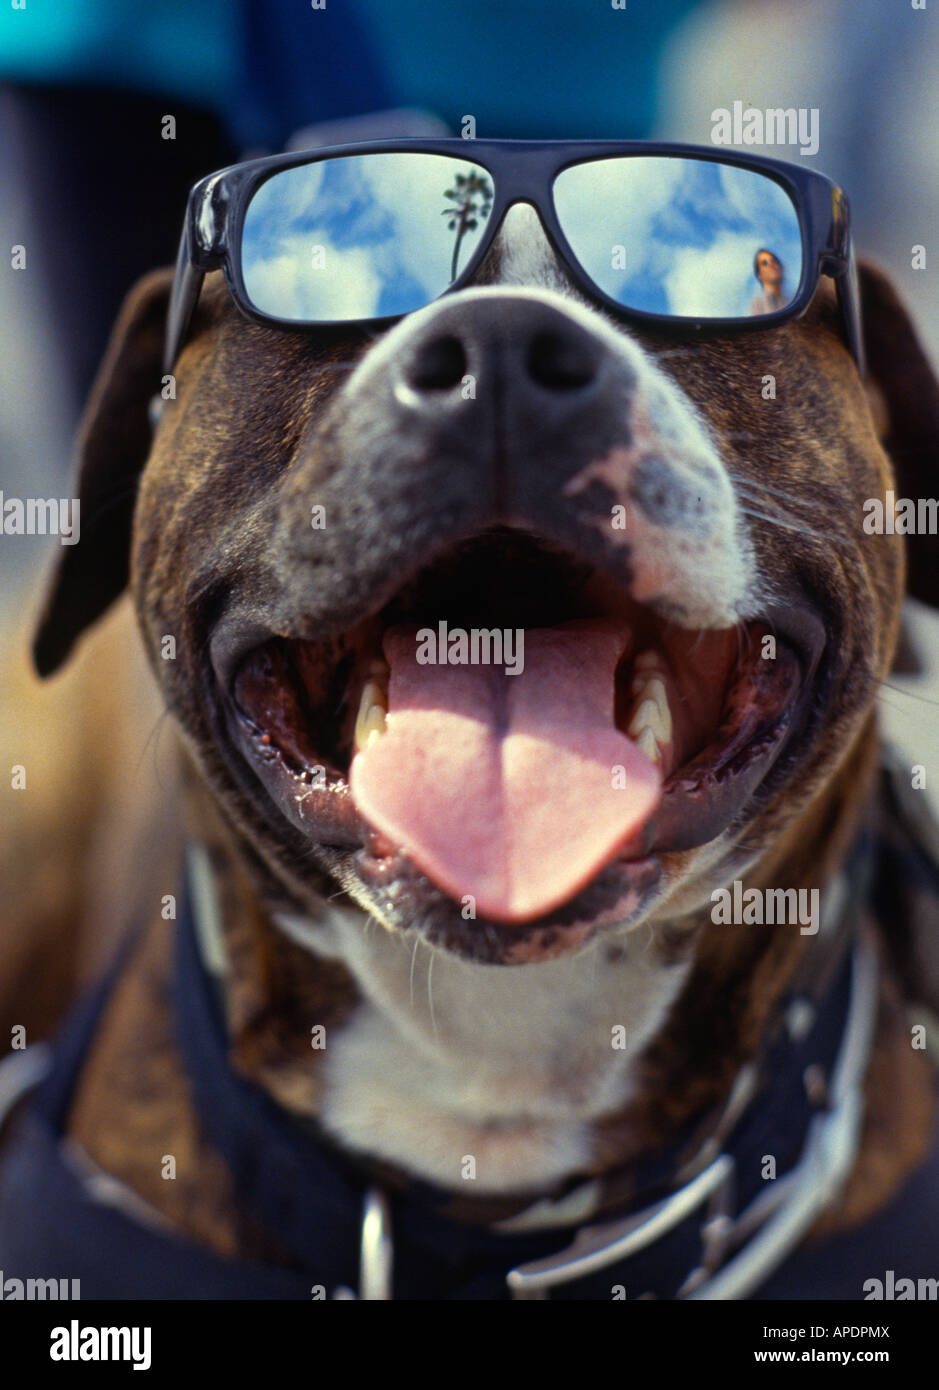 Chien cool avec des lunettes Photo Stock - Alamy